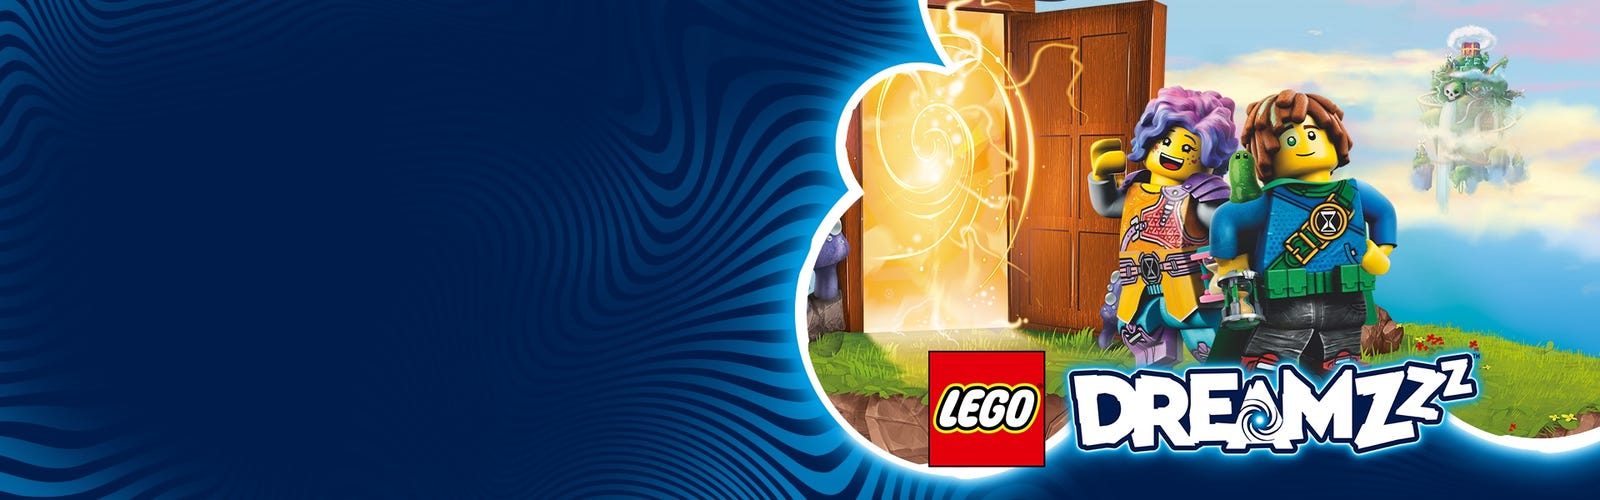 Deux personnages enfantins se tenant près d’une porte qui mène à l’univers LEGO DREAMZzz.